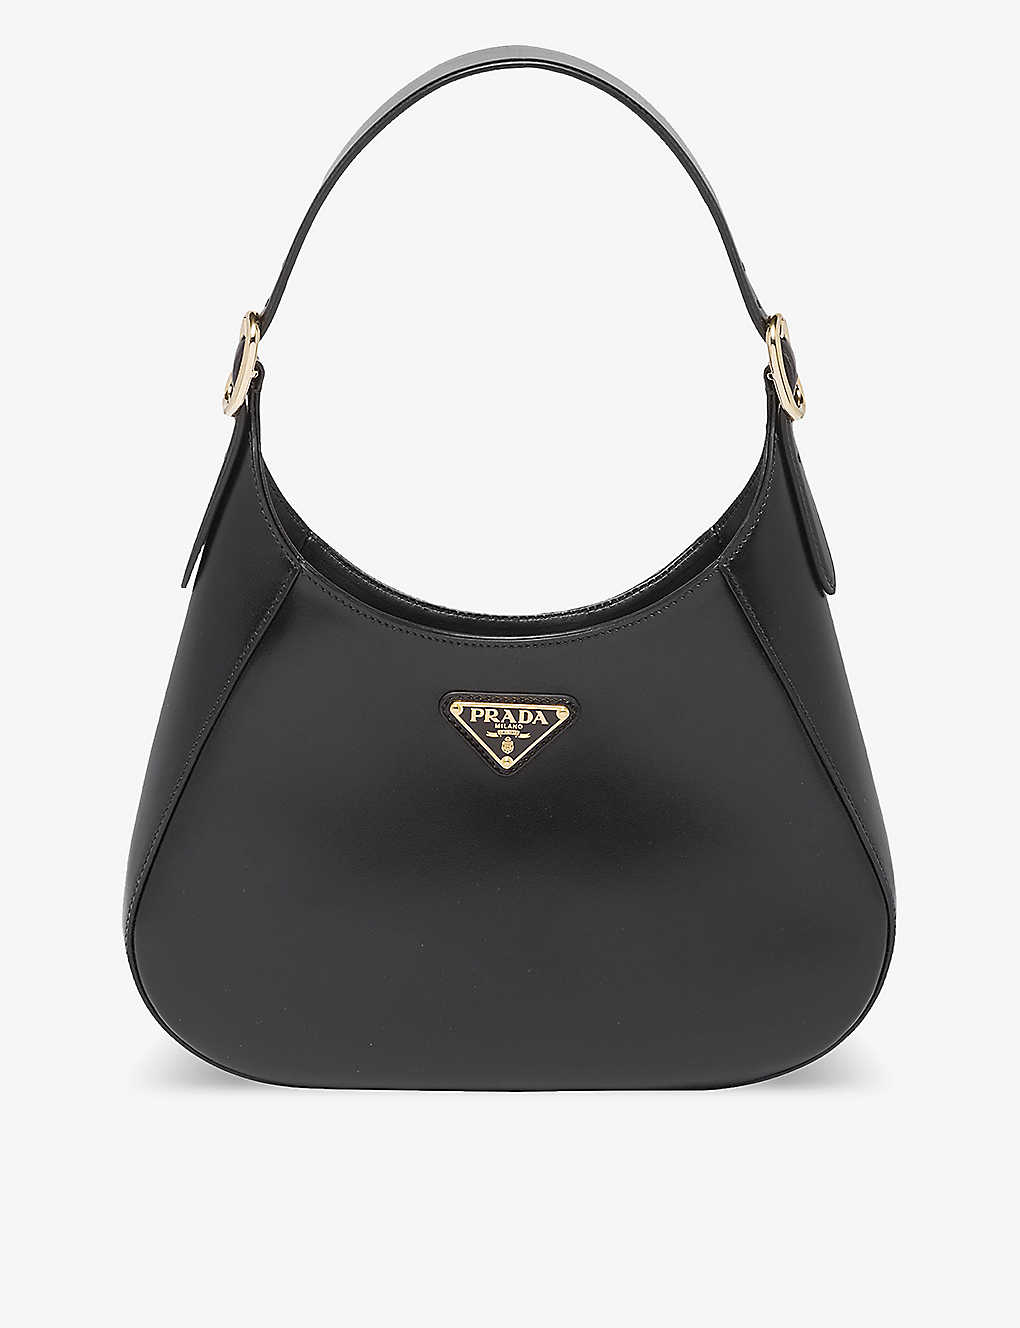 Prada Cleo Leather Shoulder Bag In Black